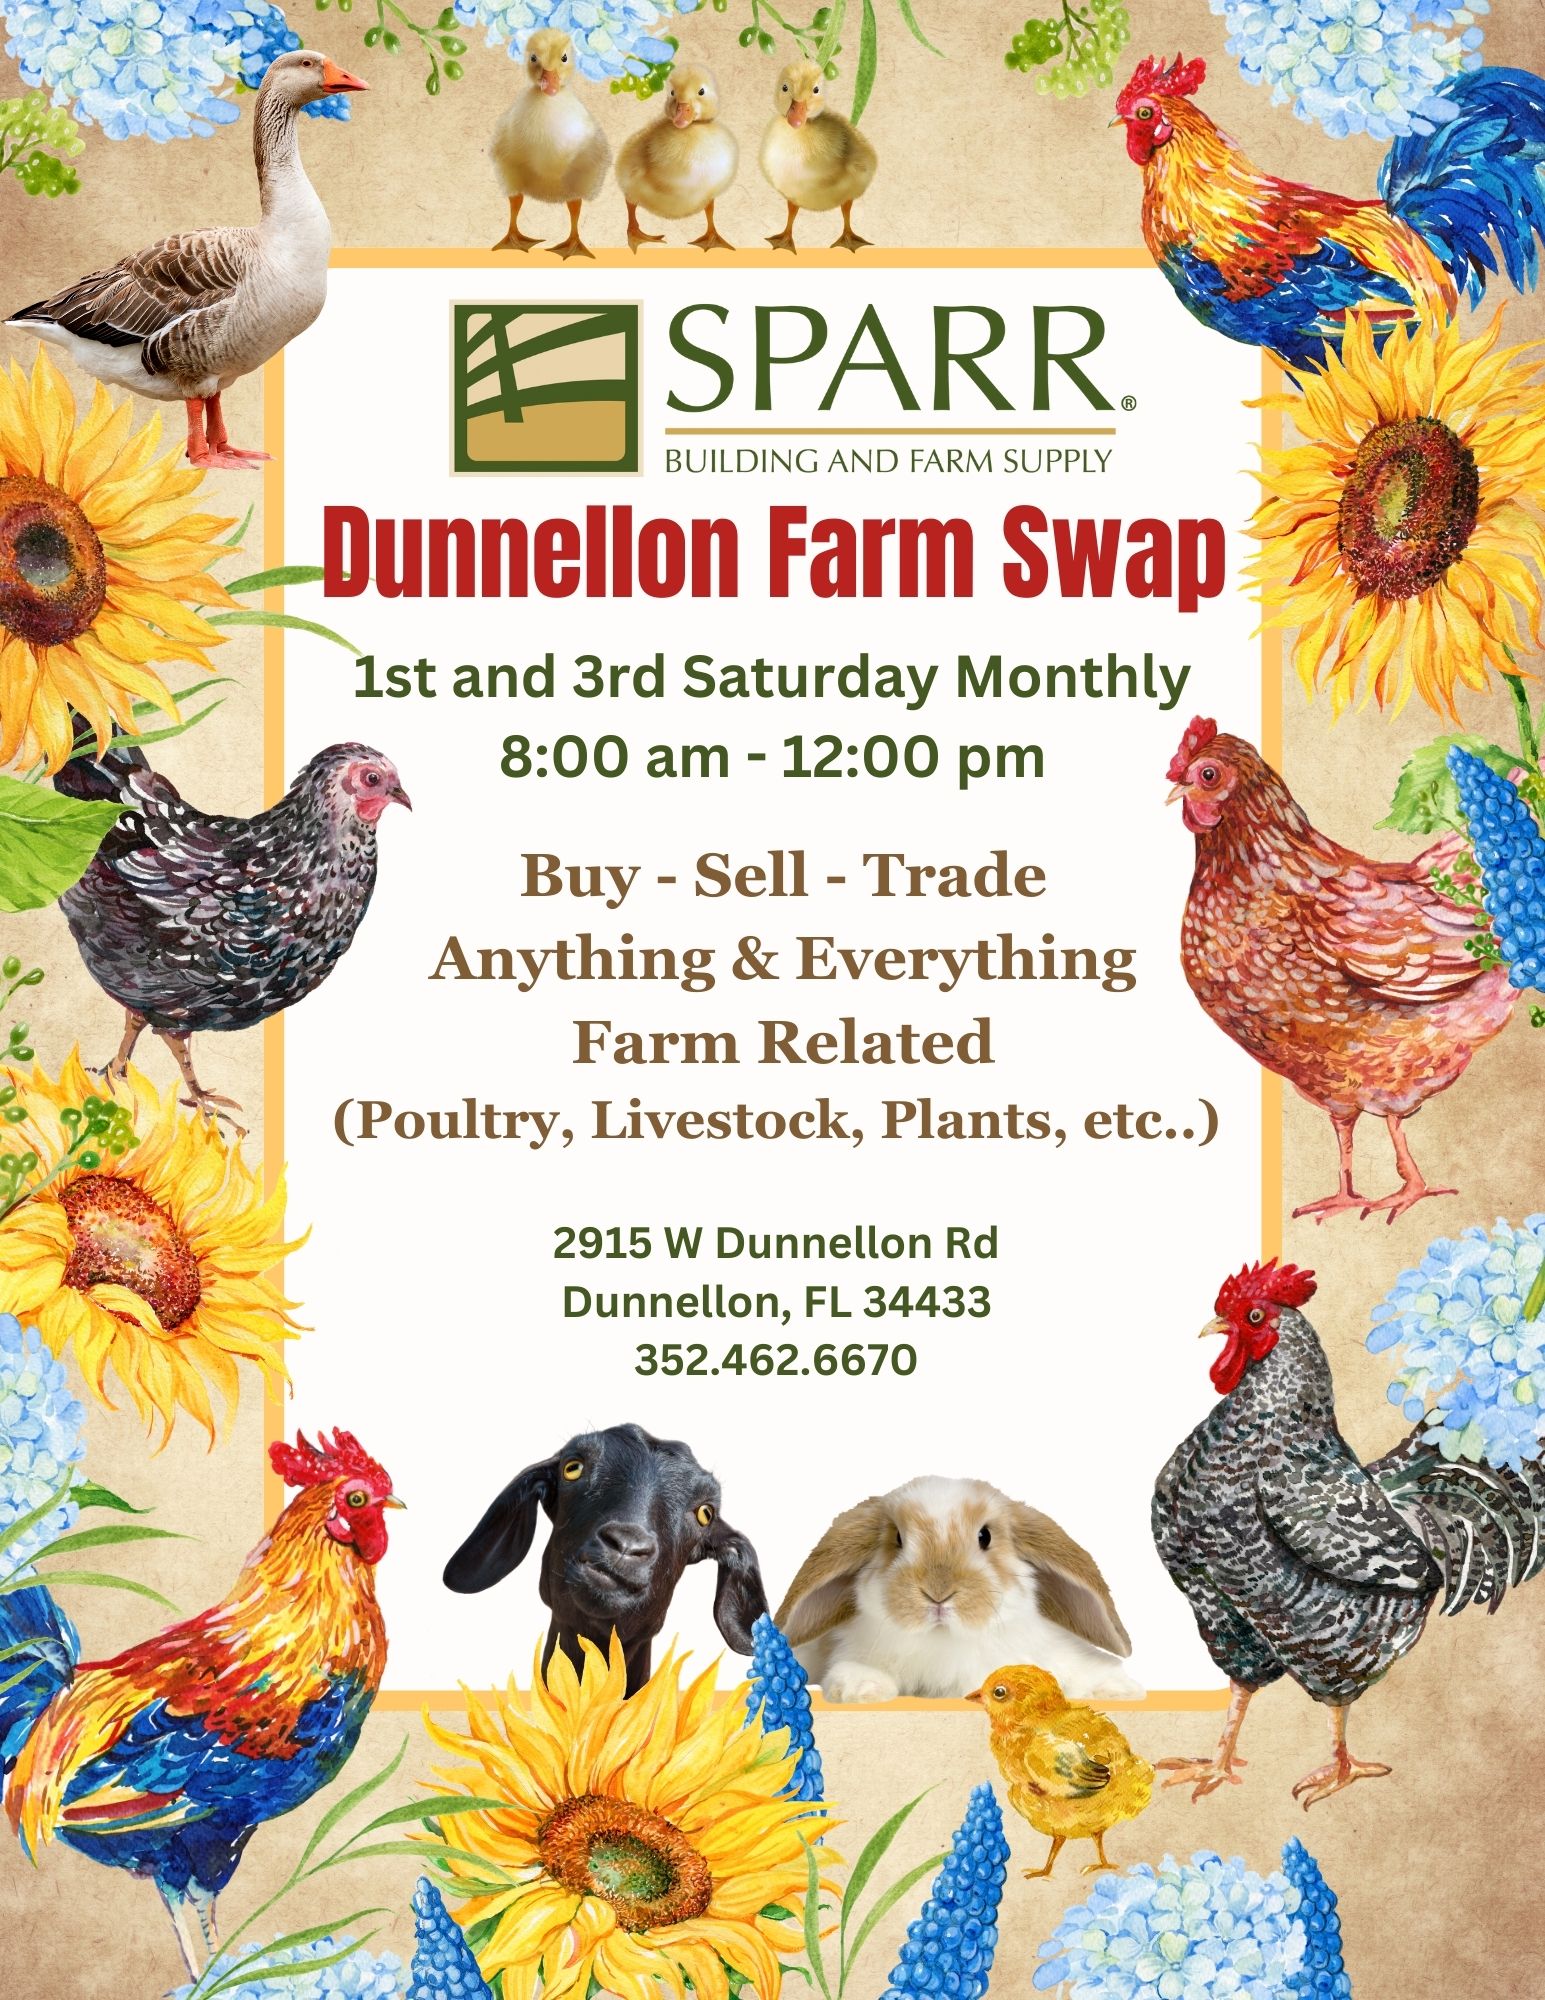 Sparr Dunnellon Farm Swap